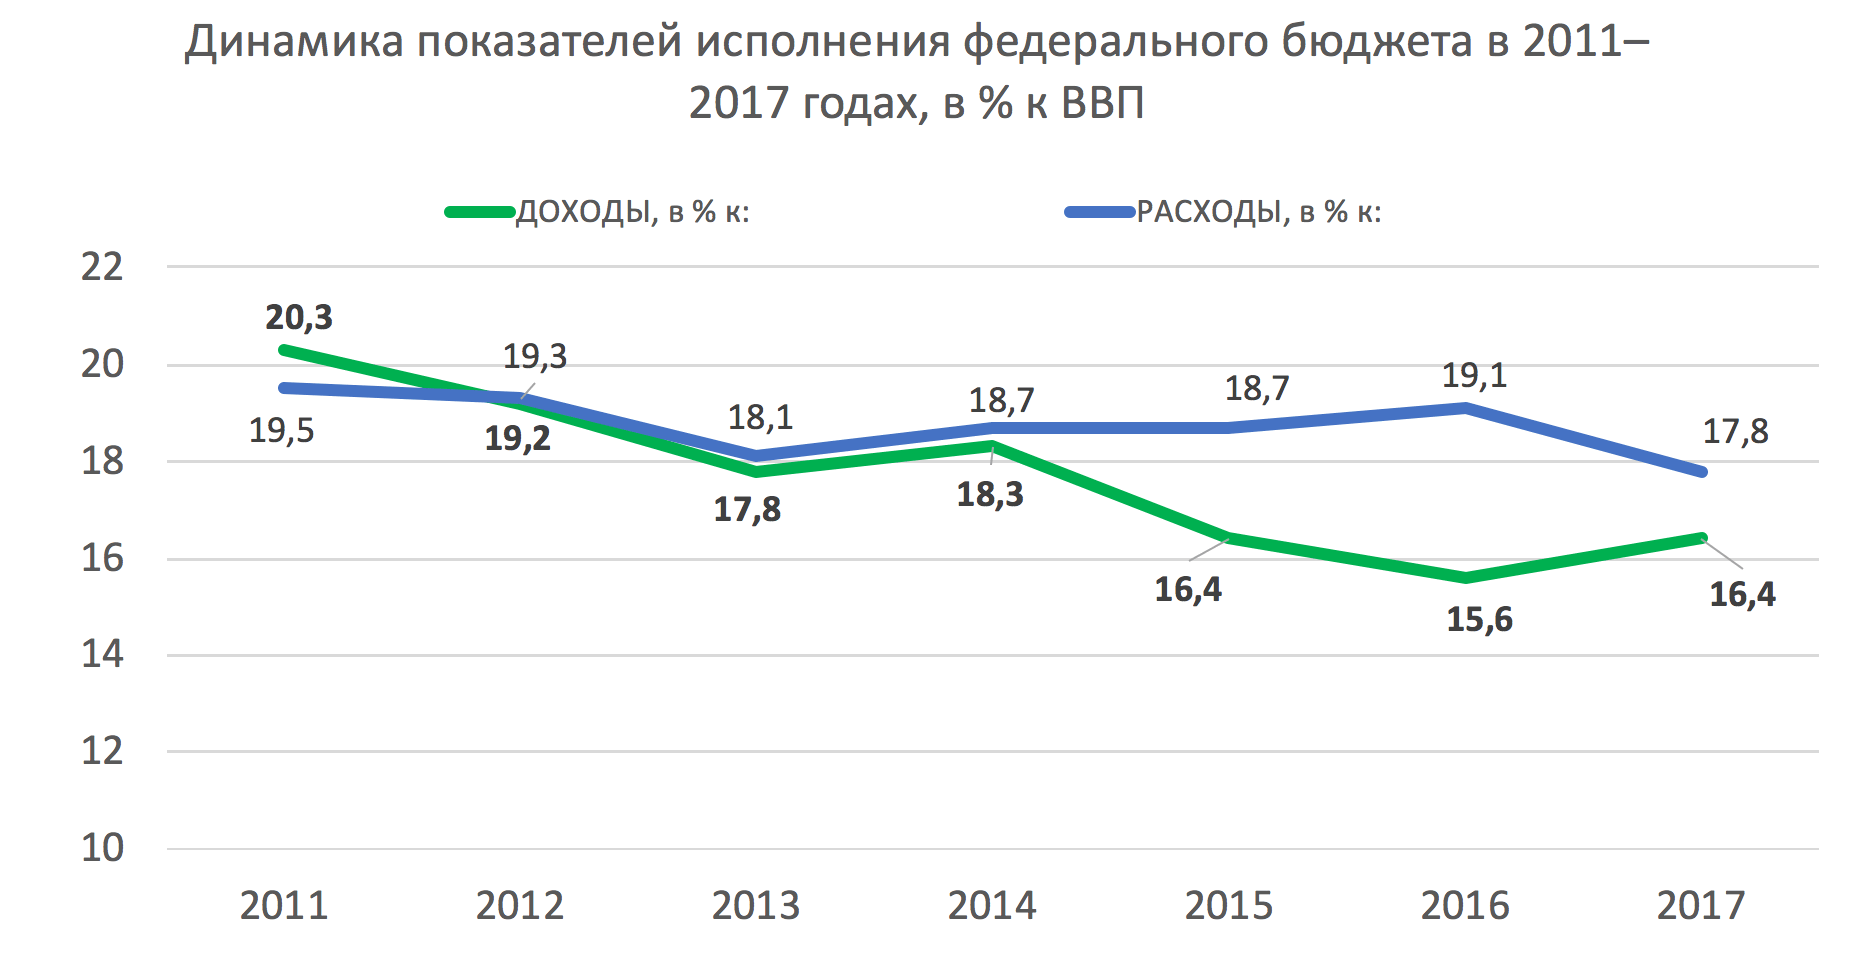 Рисунок 1. Динамика показателей исполнения федерального бюджета в 2011-2017 годах, в % к ВВП